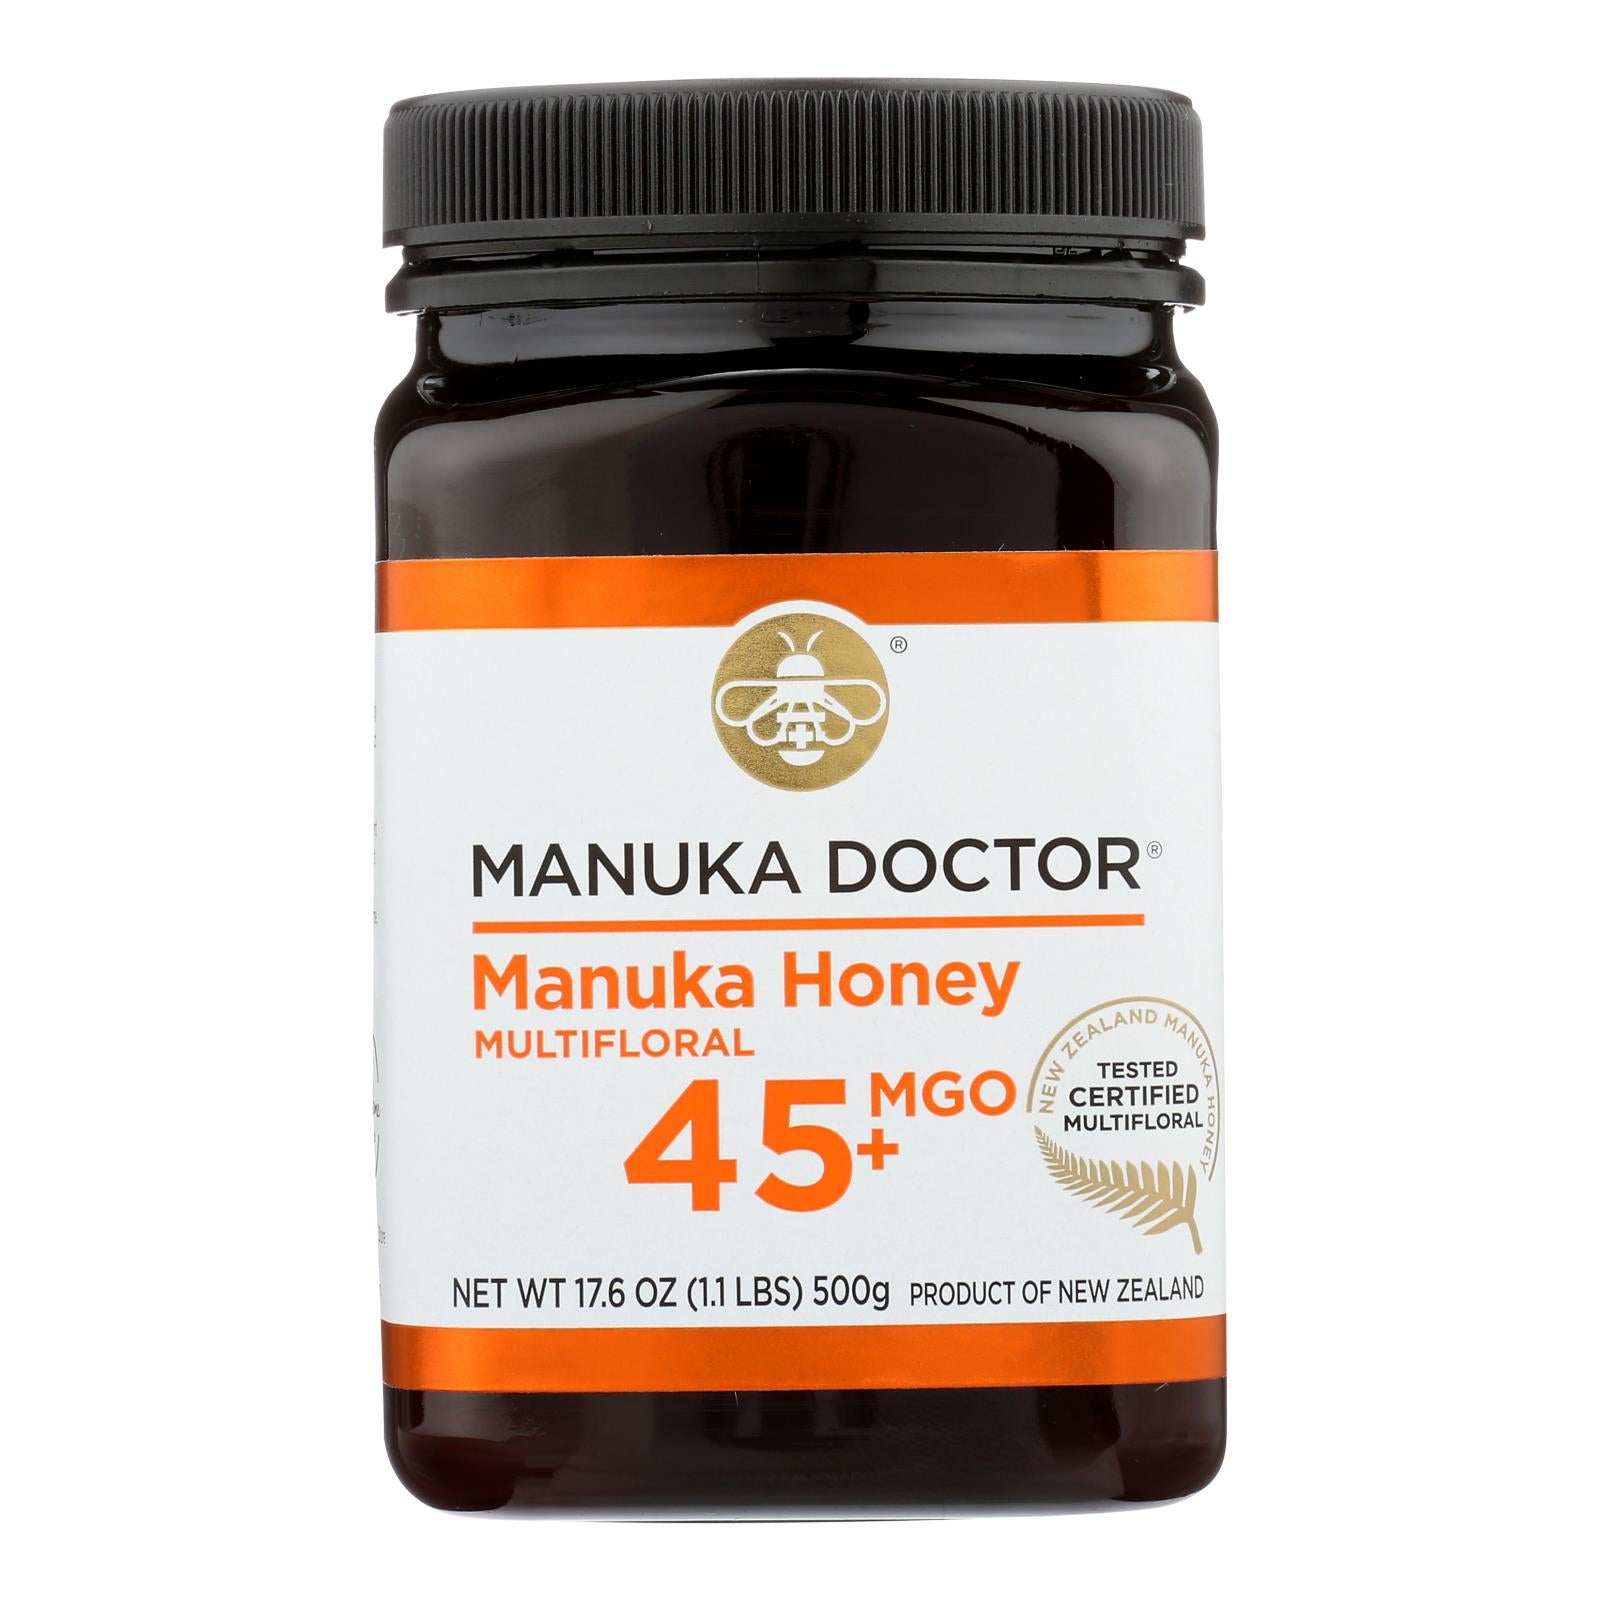 Docteur Manuka, Manuka Doctor - Miel de Manuka Mf Mgo45+ 500g - Carton de 6-17.6 OZ (Pack de 6)